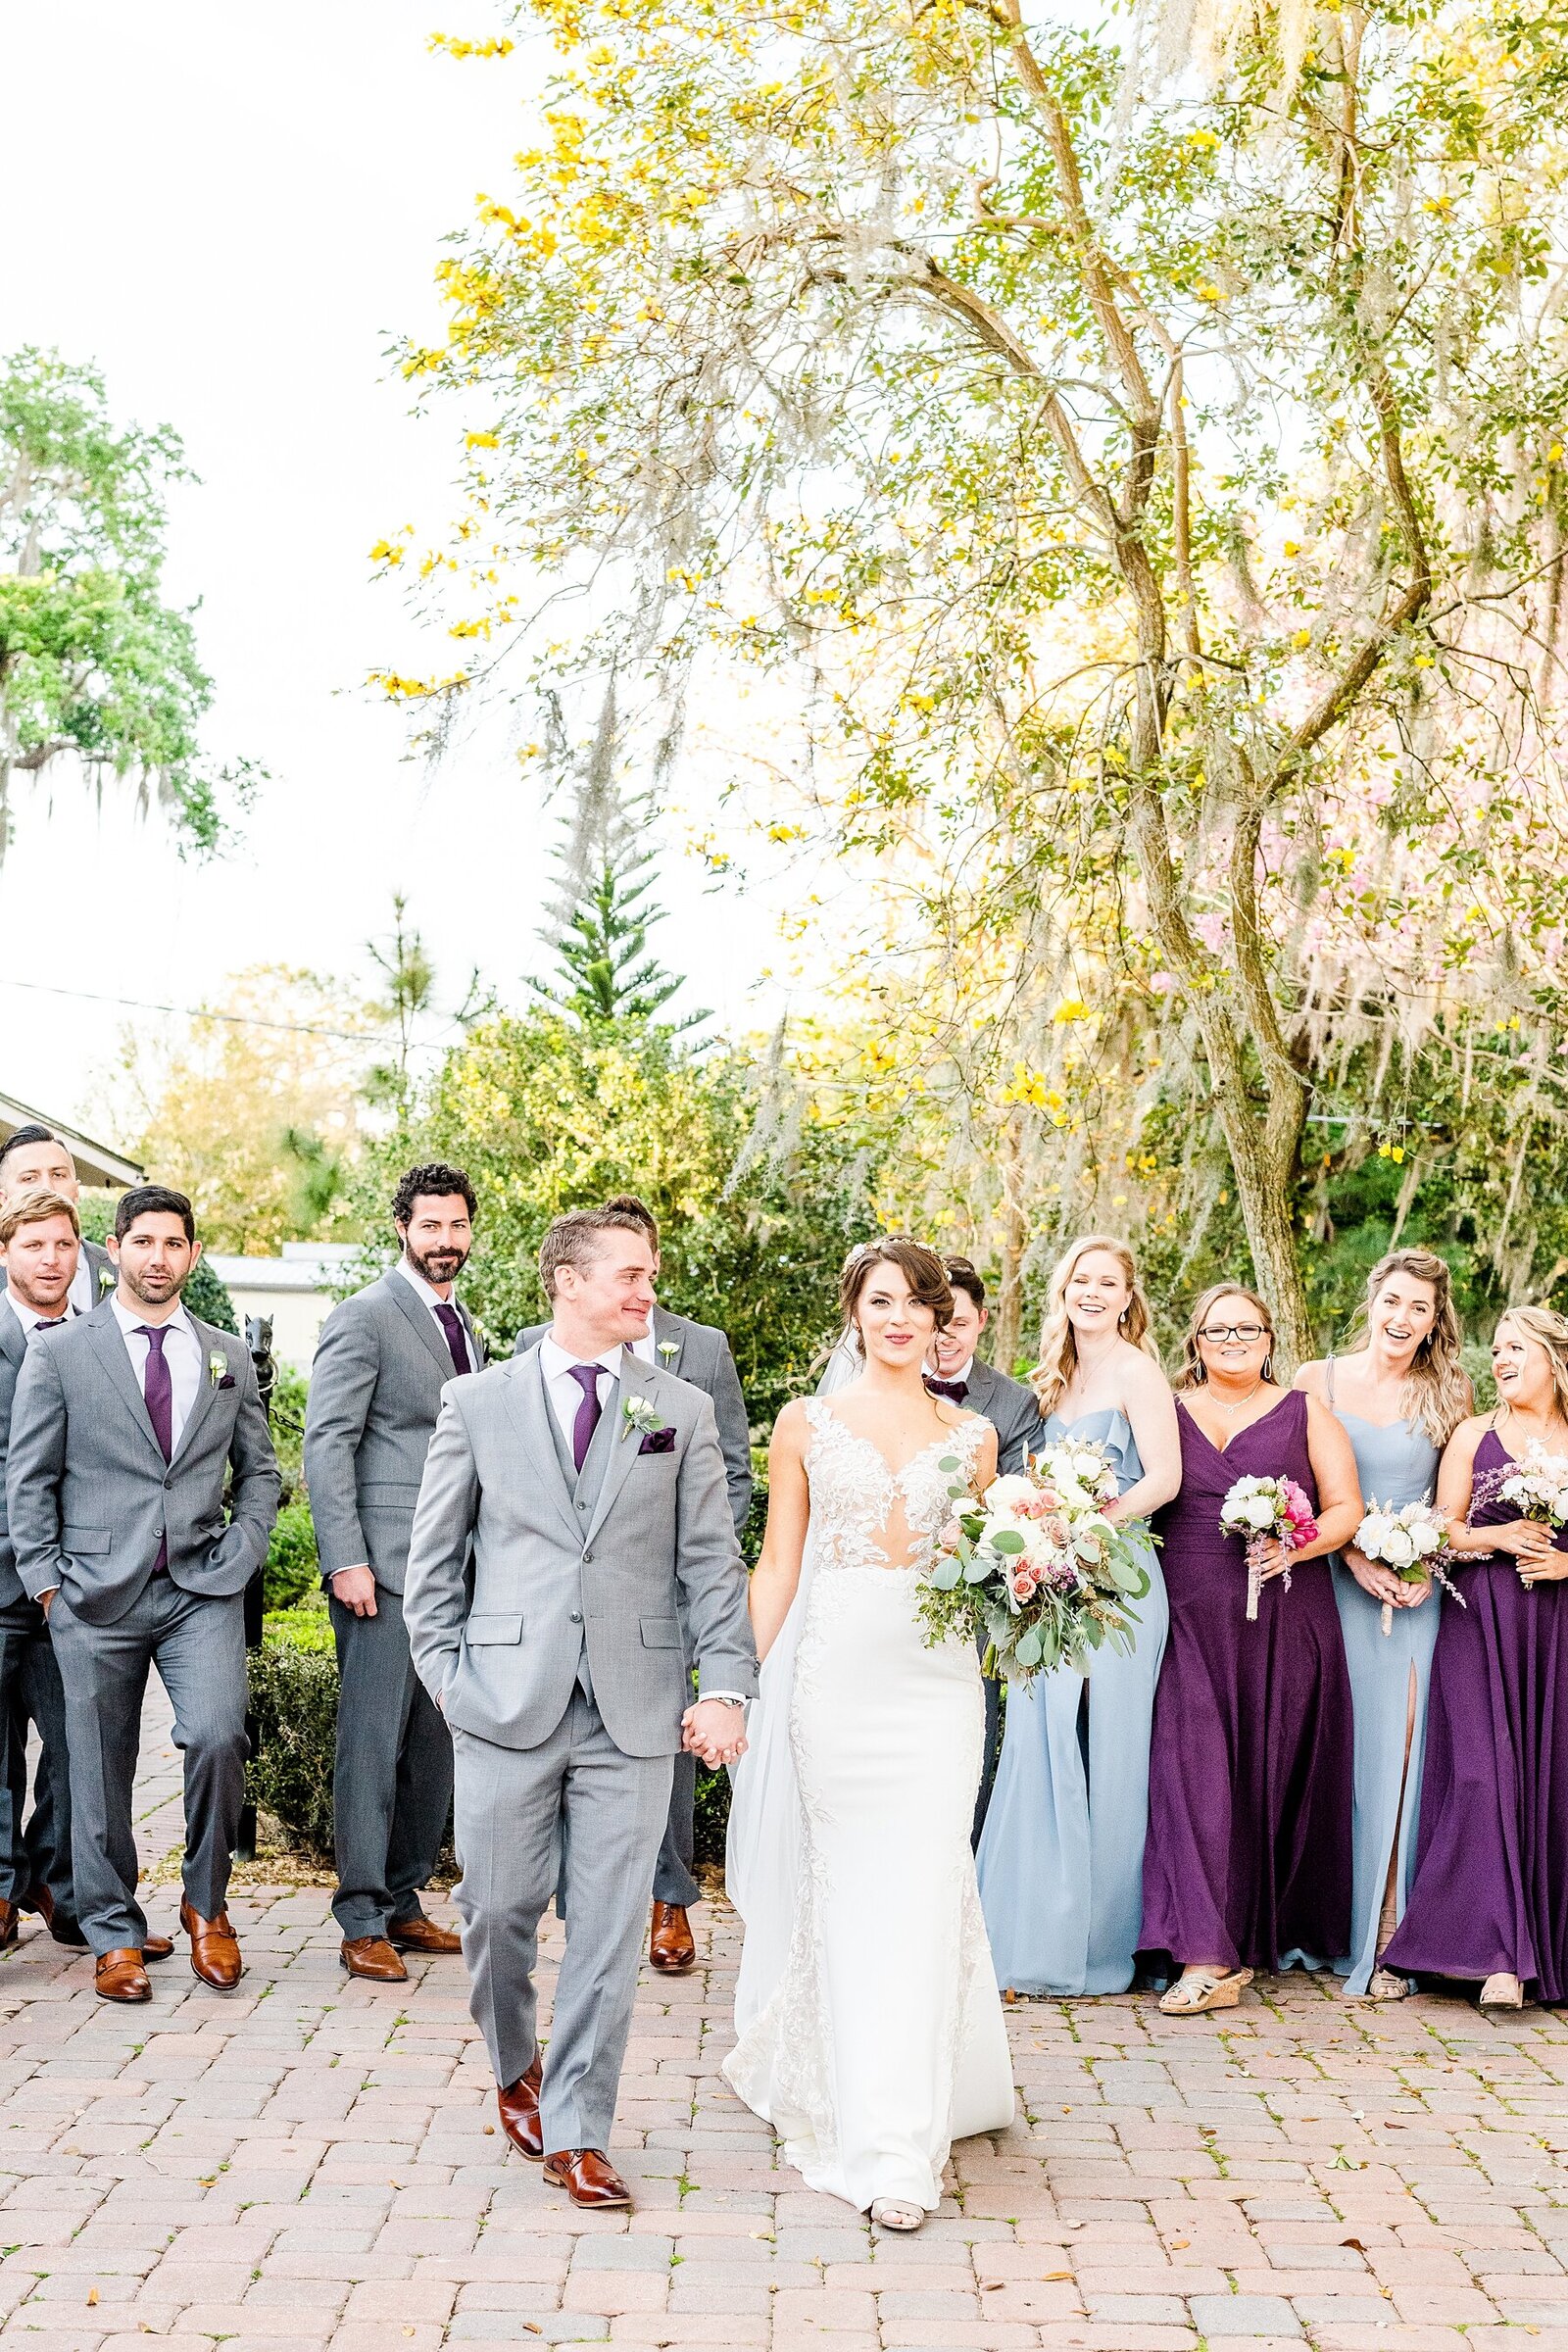 Bridal Party Photos | Orlando Wedding Photographer | Chynna Pacheco Photography